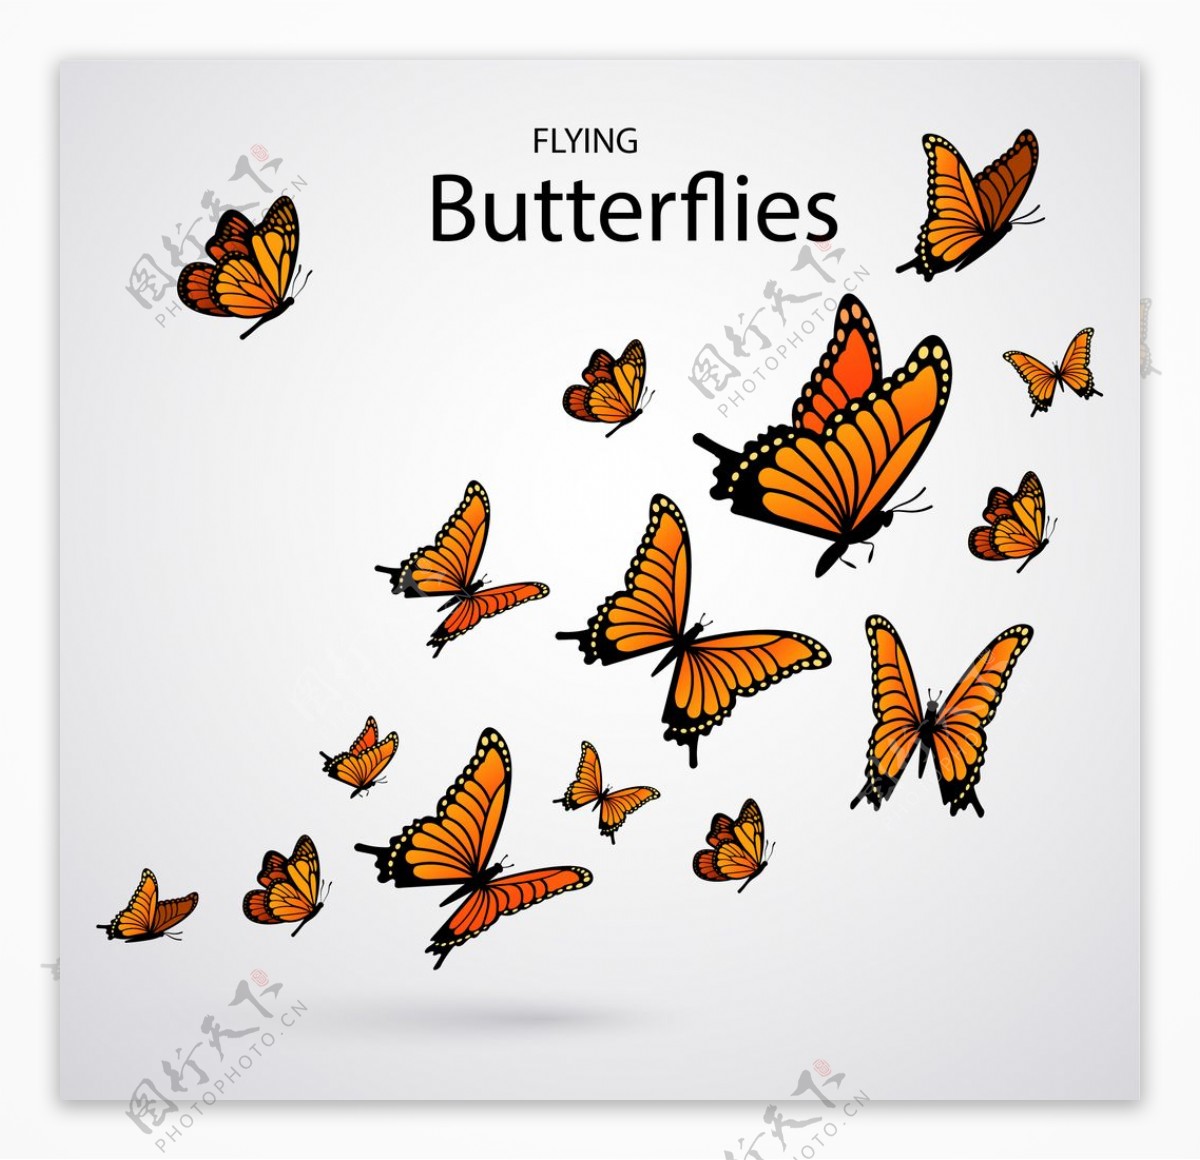 蝴蝶昆虫动物图片